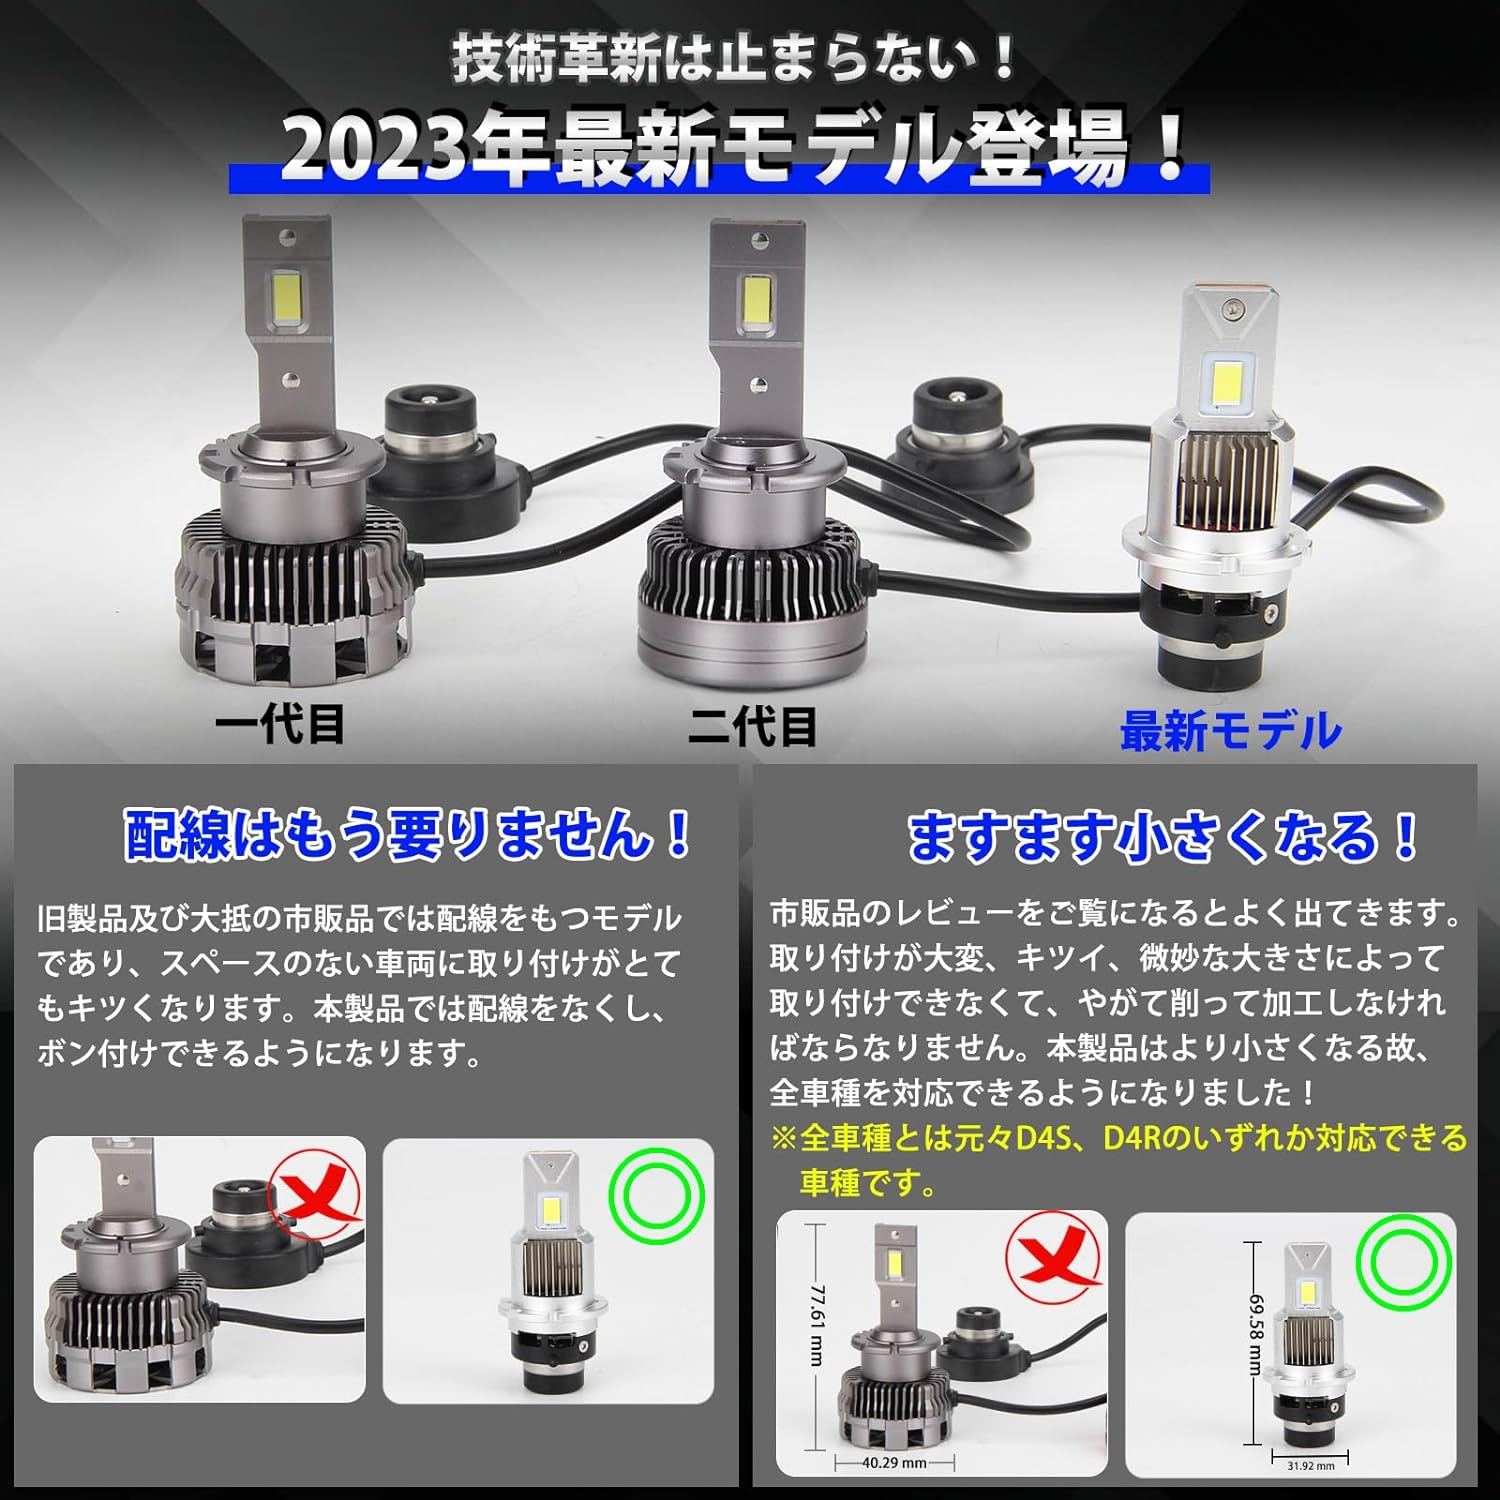 エルグランド LED ヘッドライト E52系 (H22.8-) 純正HID同形状 車検 